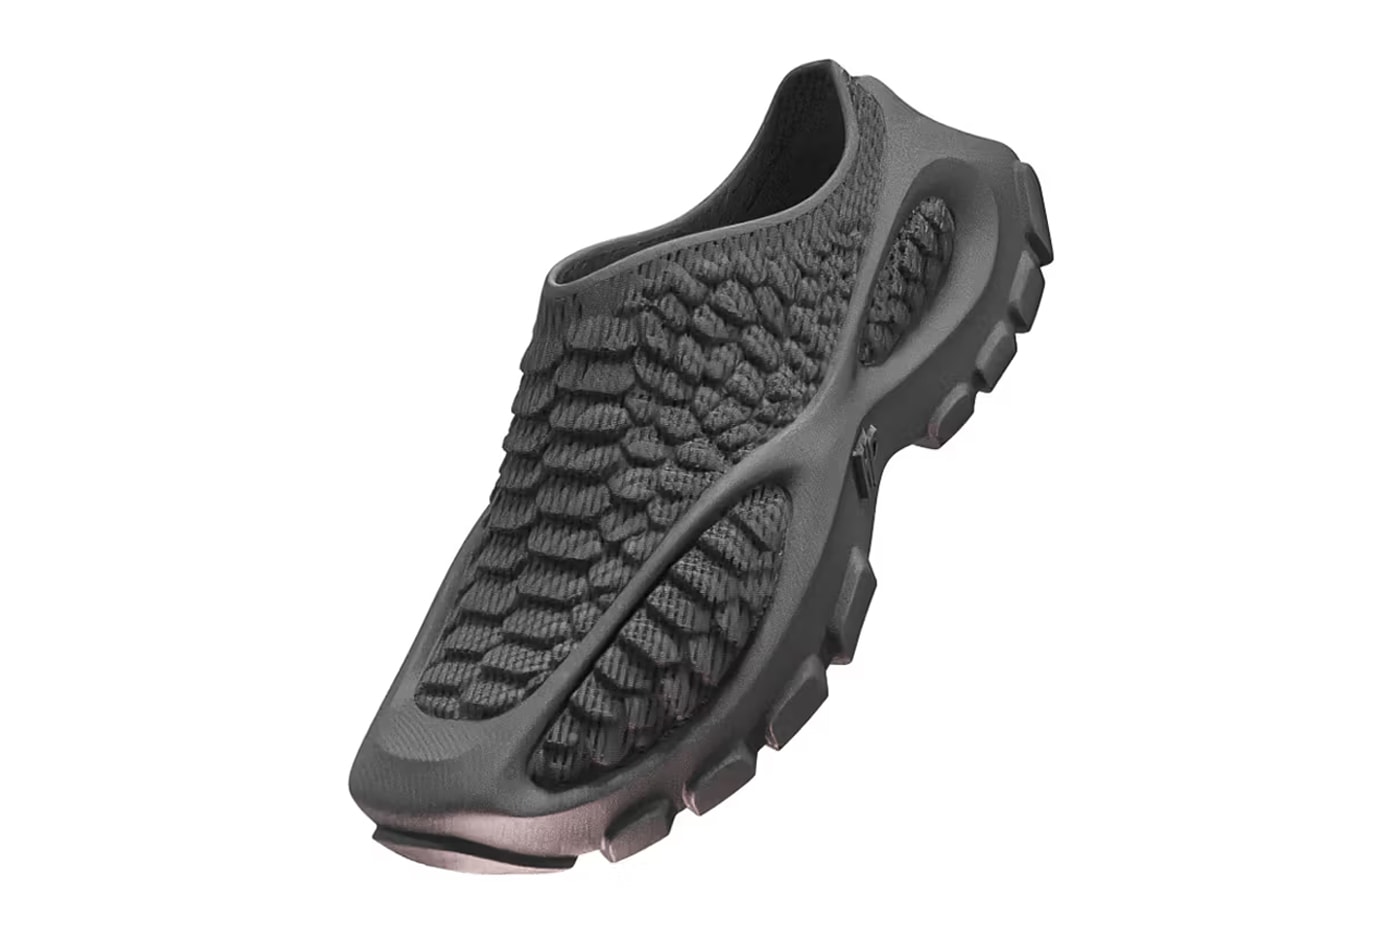 Heron Preston and Zellerfeld Return With 3D-Printed HERON01 Shoe in "Black"